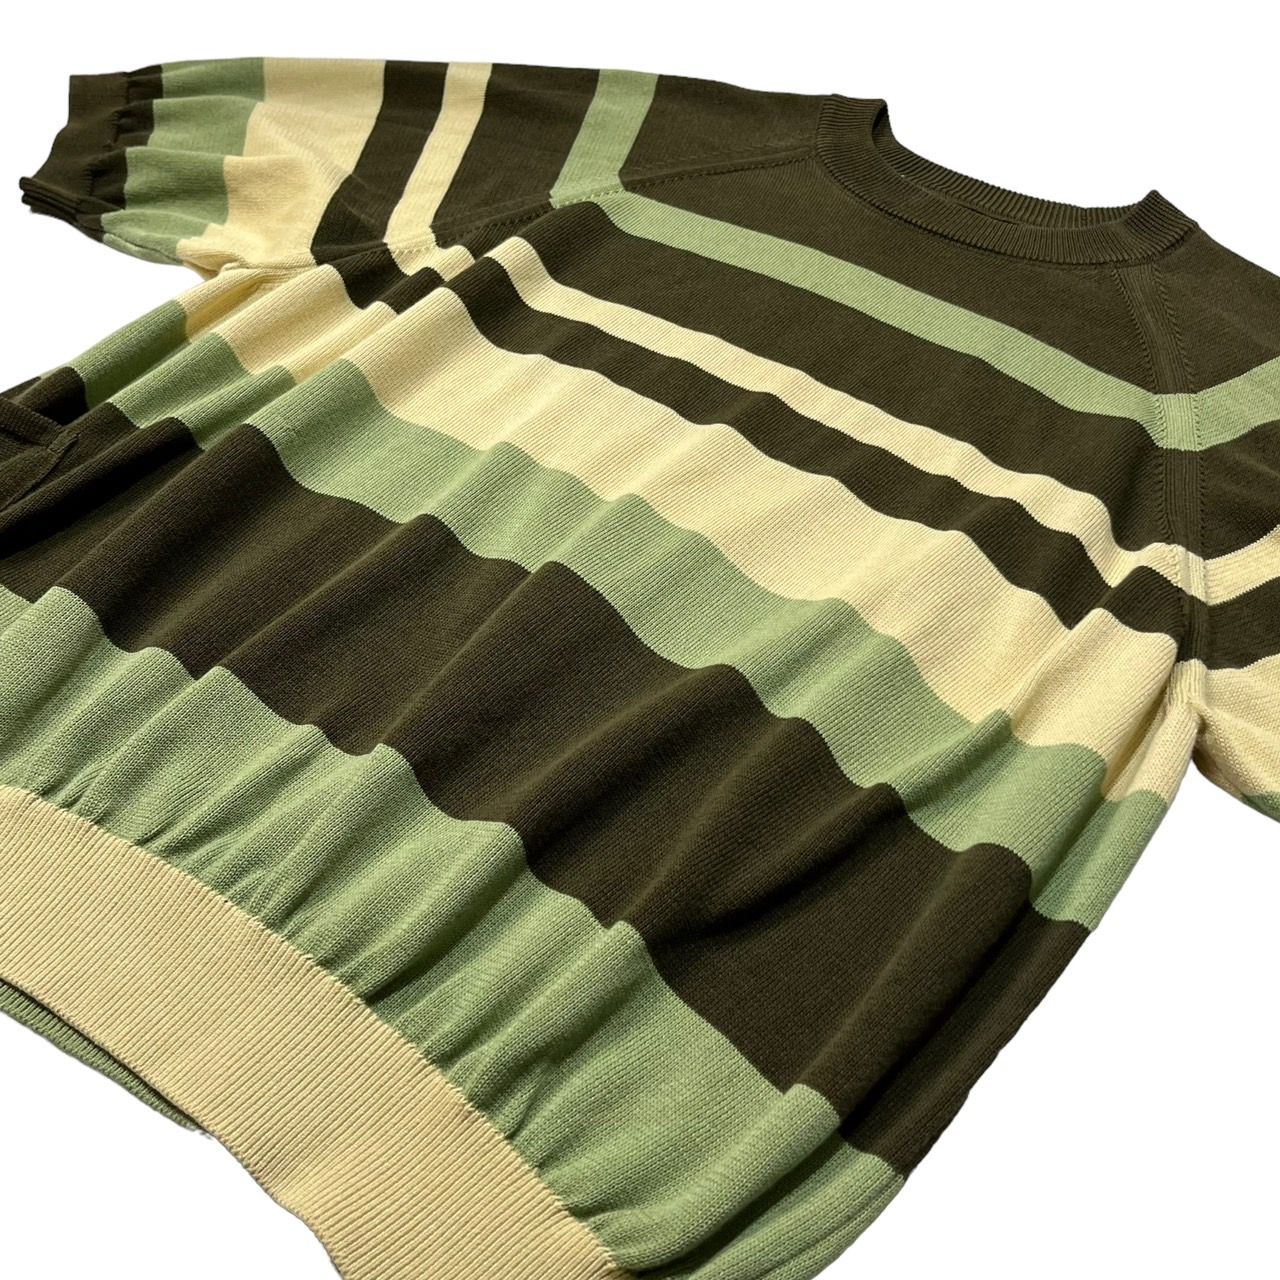 SUNSEA(サンシー) 20SS CLIFs Border Sweater/ボーダーセーター/半袖ニット 20S51 SIZE 2(M) ベージュ×カーキ×ライトグリーン  - メルカリ